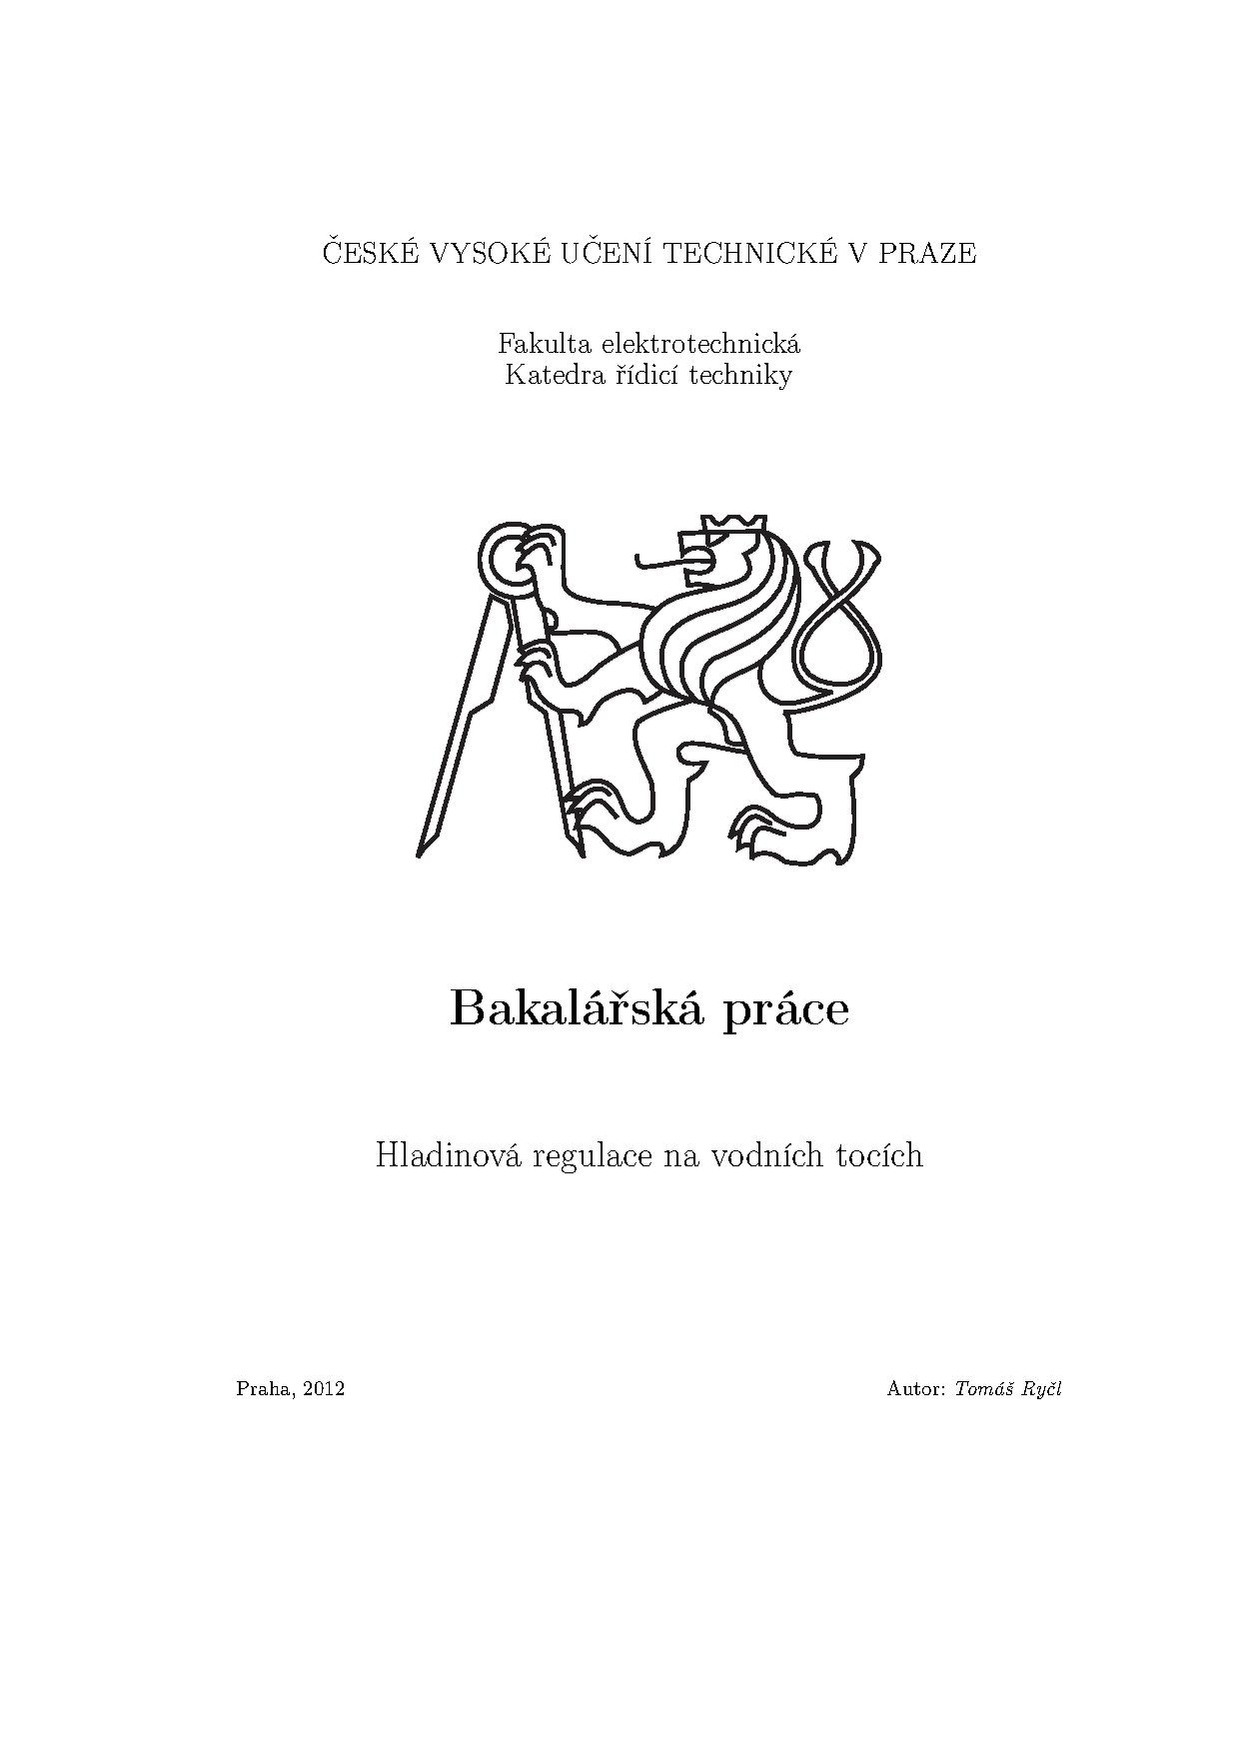 Bp 2012 rycl tomas.pdf